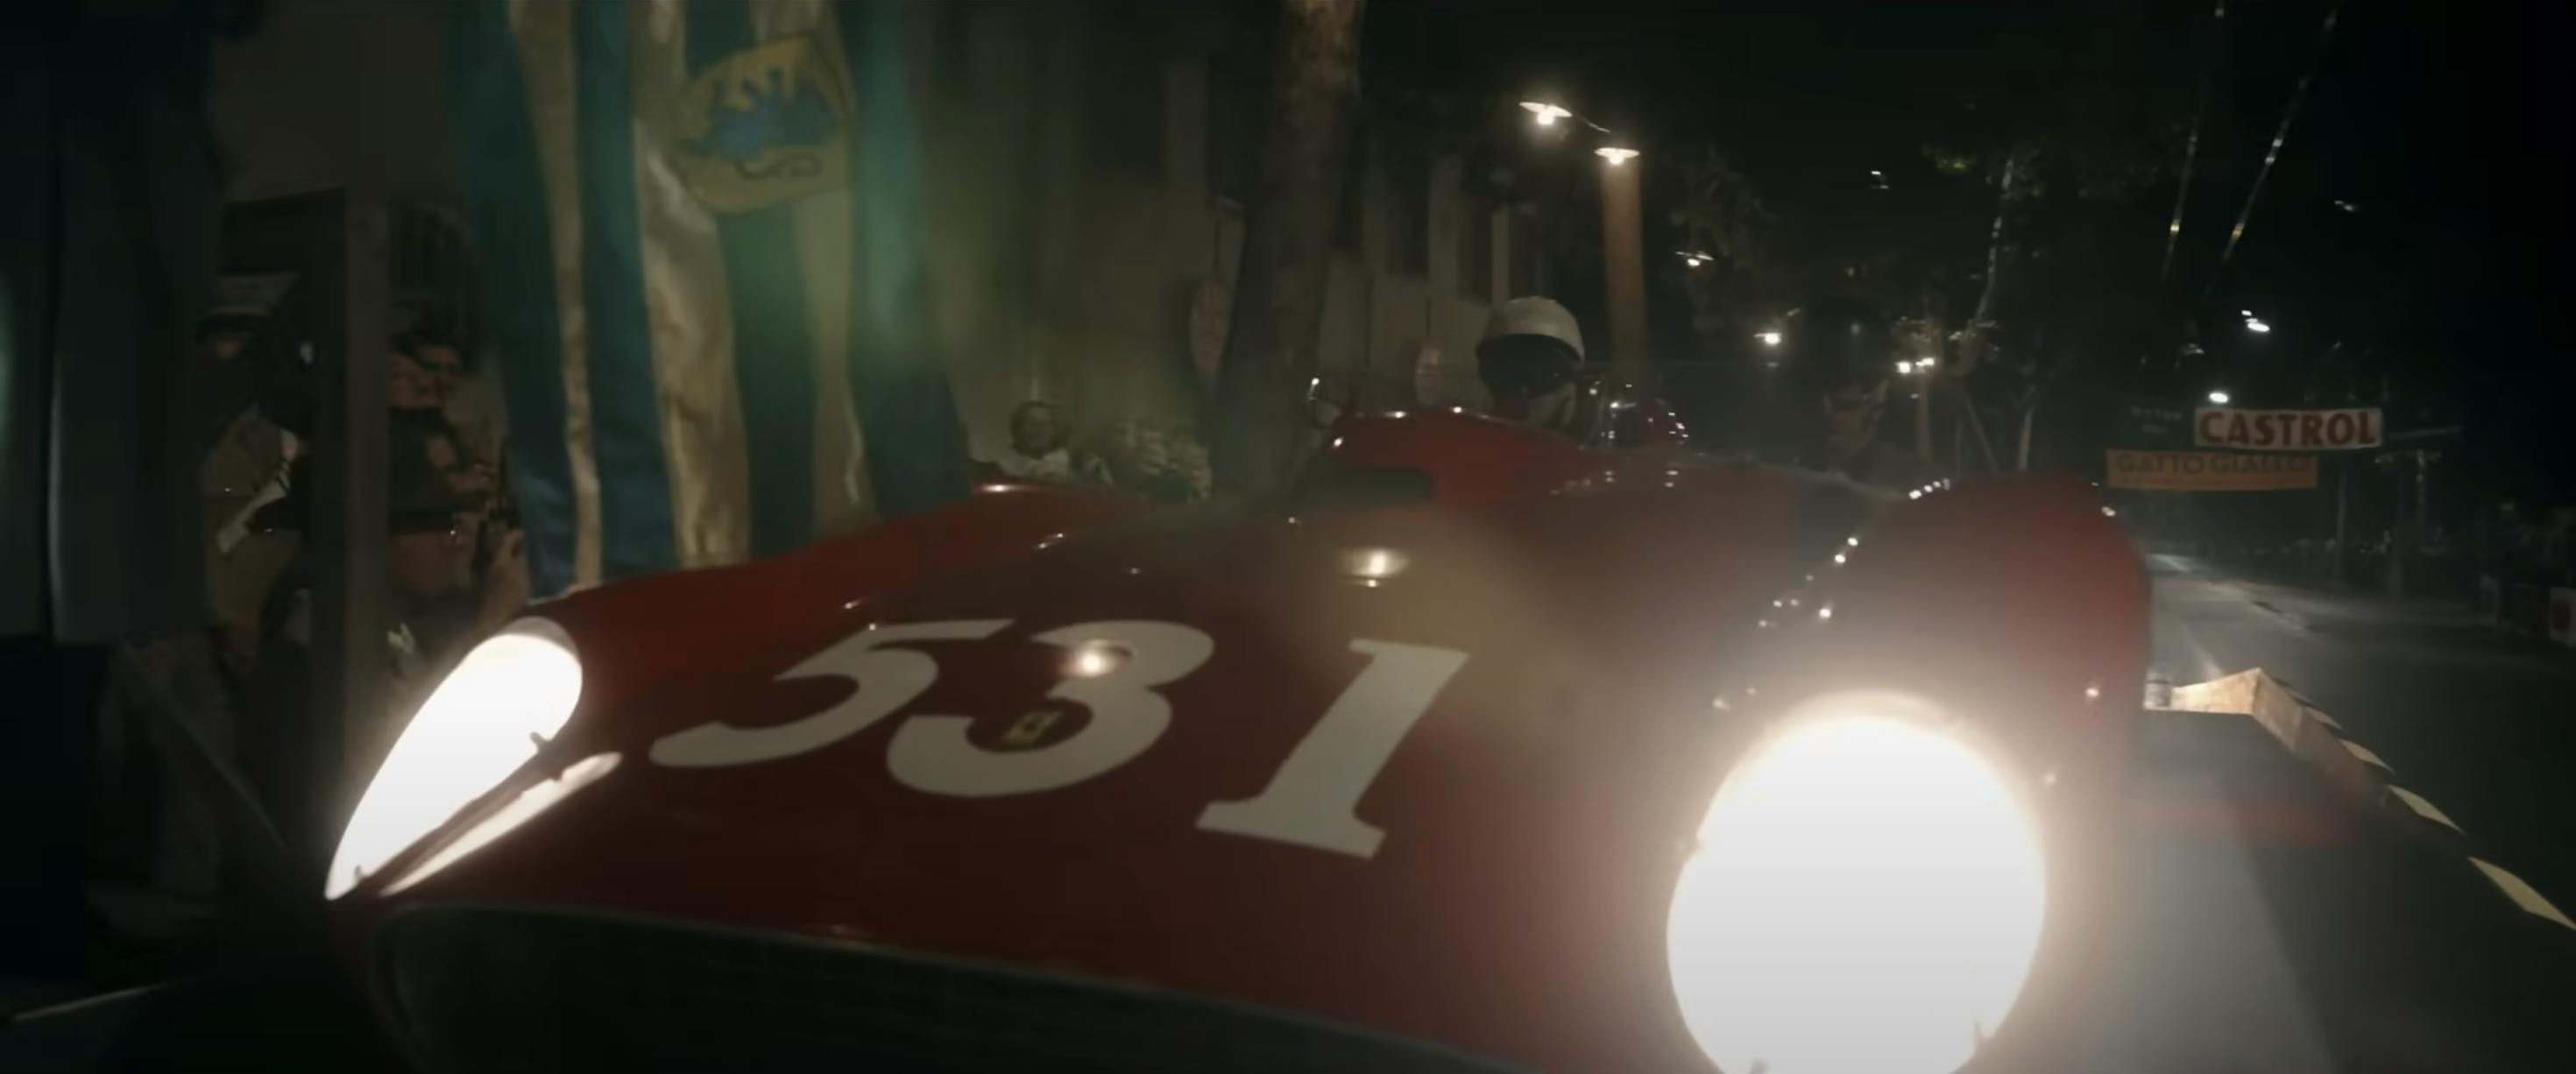 Ferrari film racing action still night lights